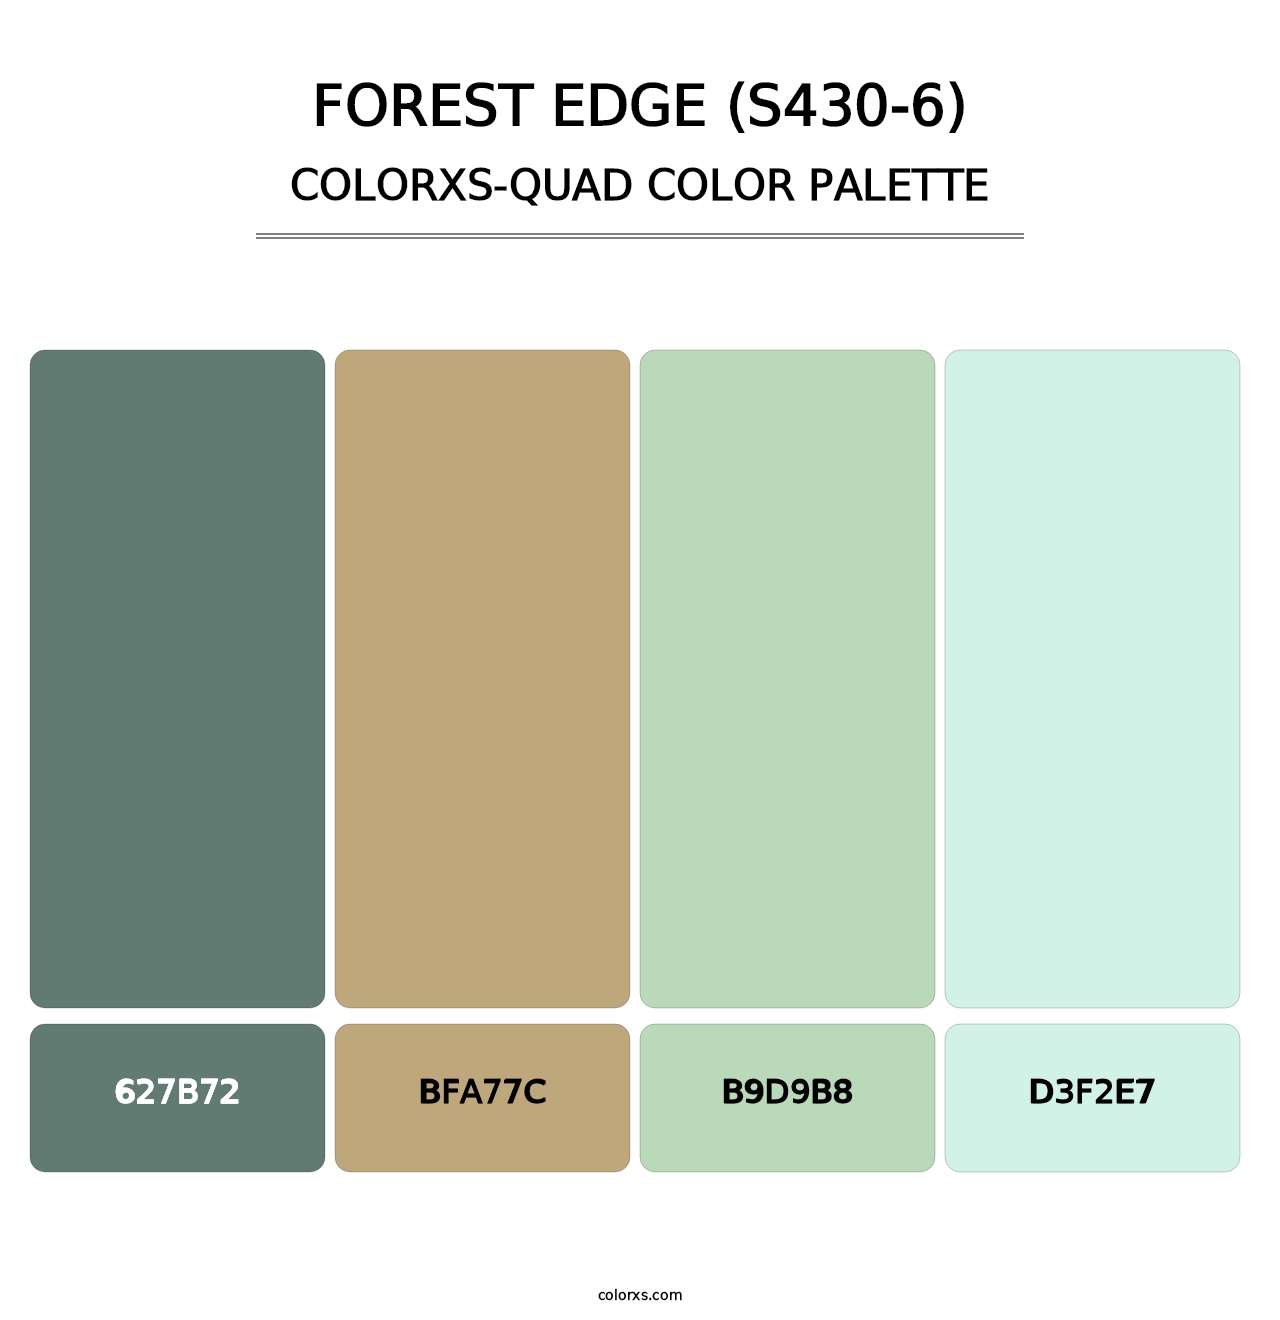 Forest Edge (S430-6) - Colorxs Quad Palette